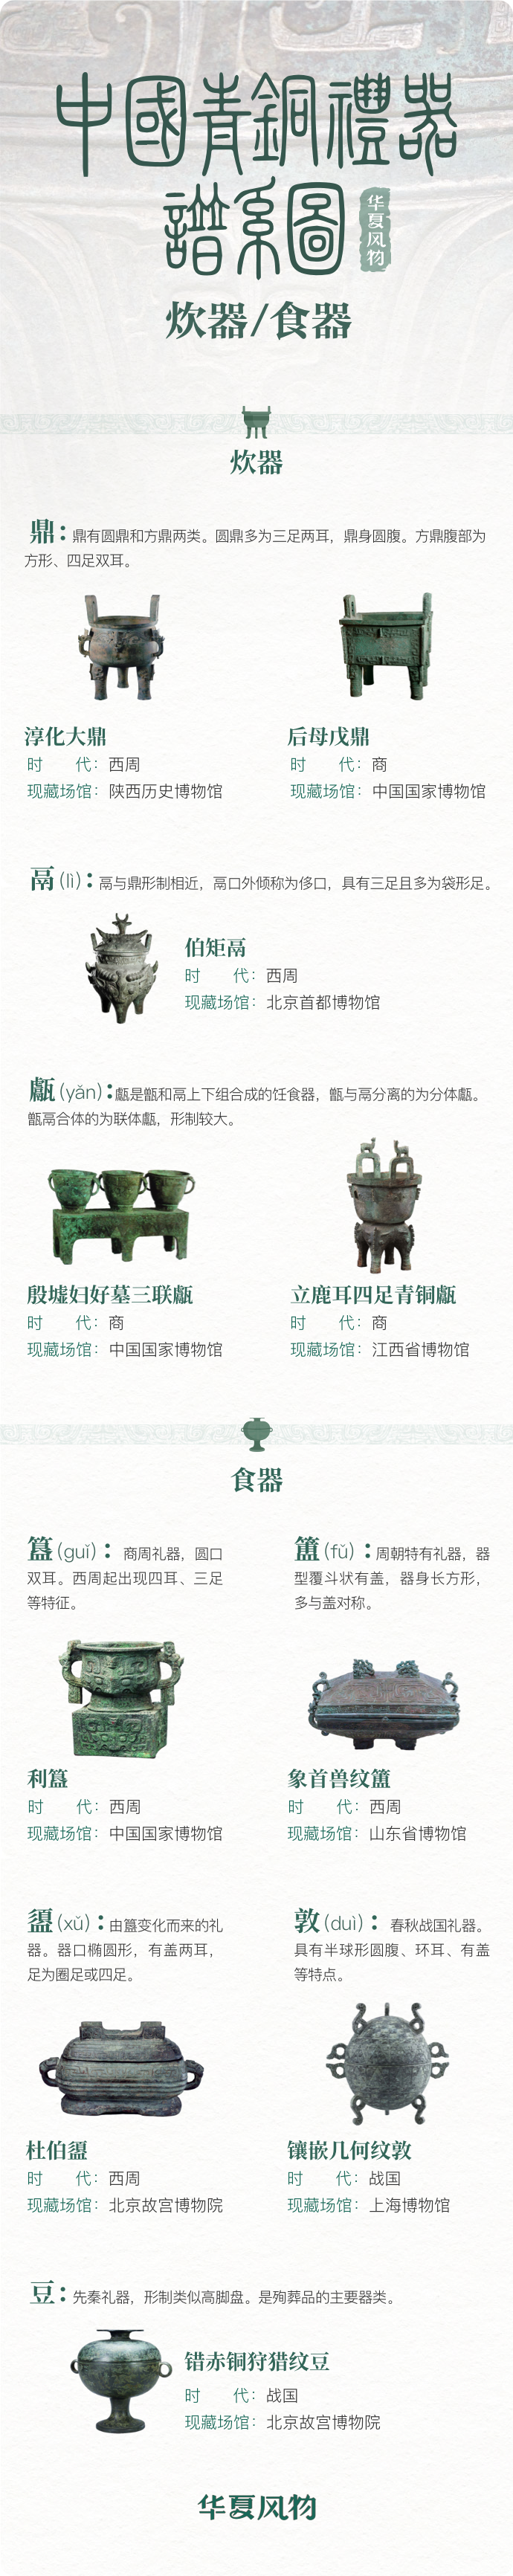 中国青铜炊器与食器谱系图 ©华夏风物